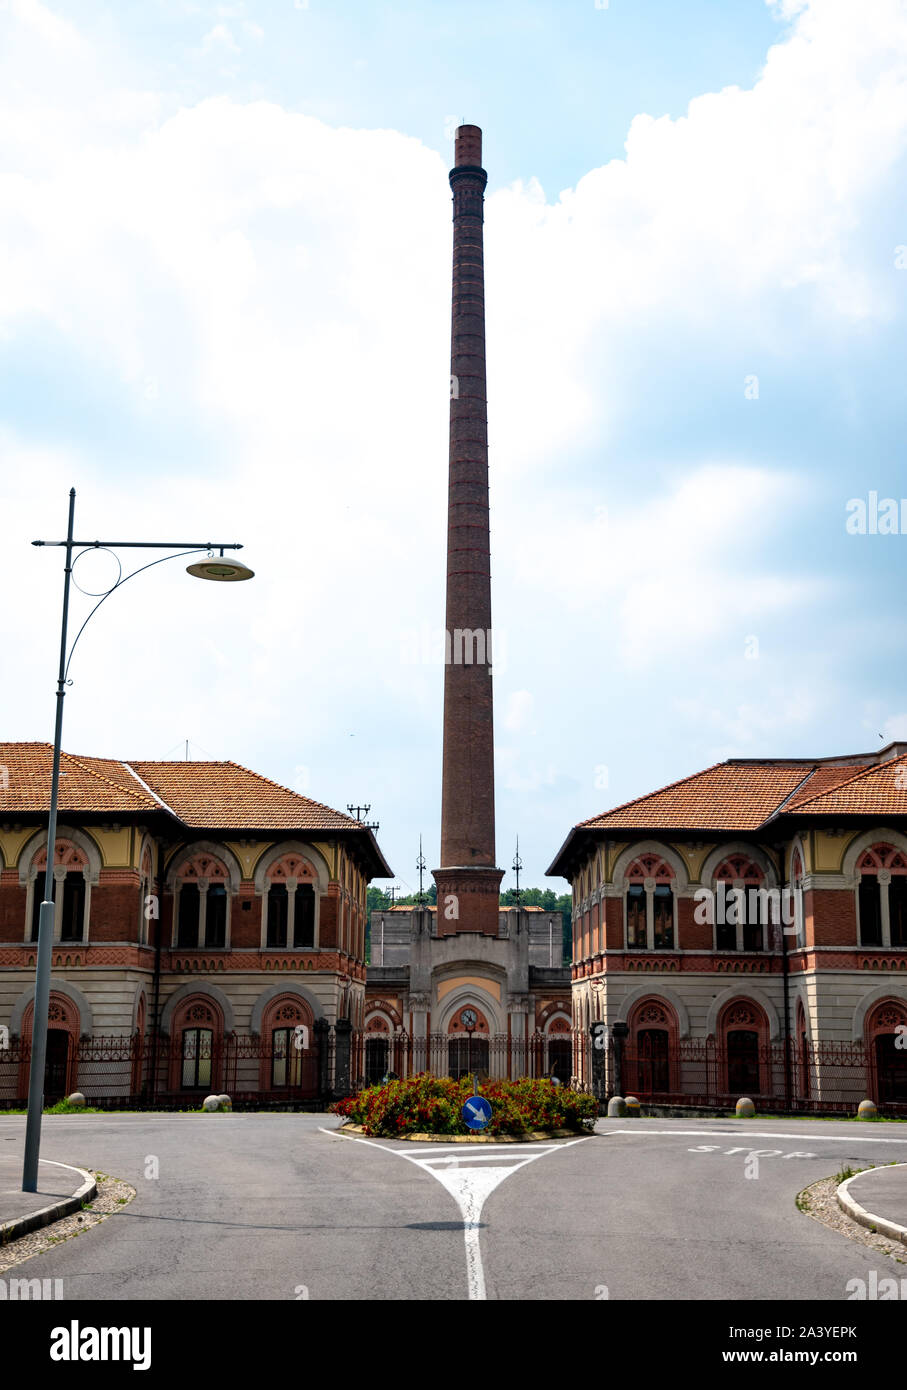 Blick auf den Haupteingang der Baumwollfabrik in Crespi D'Adda, einer wunderschönen UNESCO-Stätte in Italien. Stockfoto